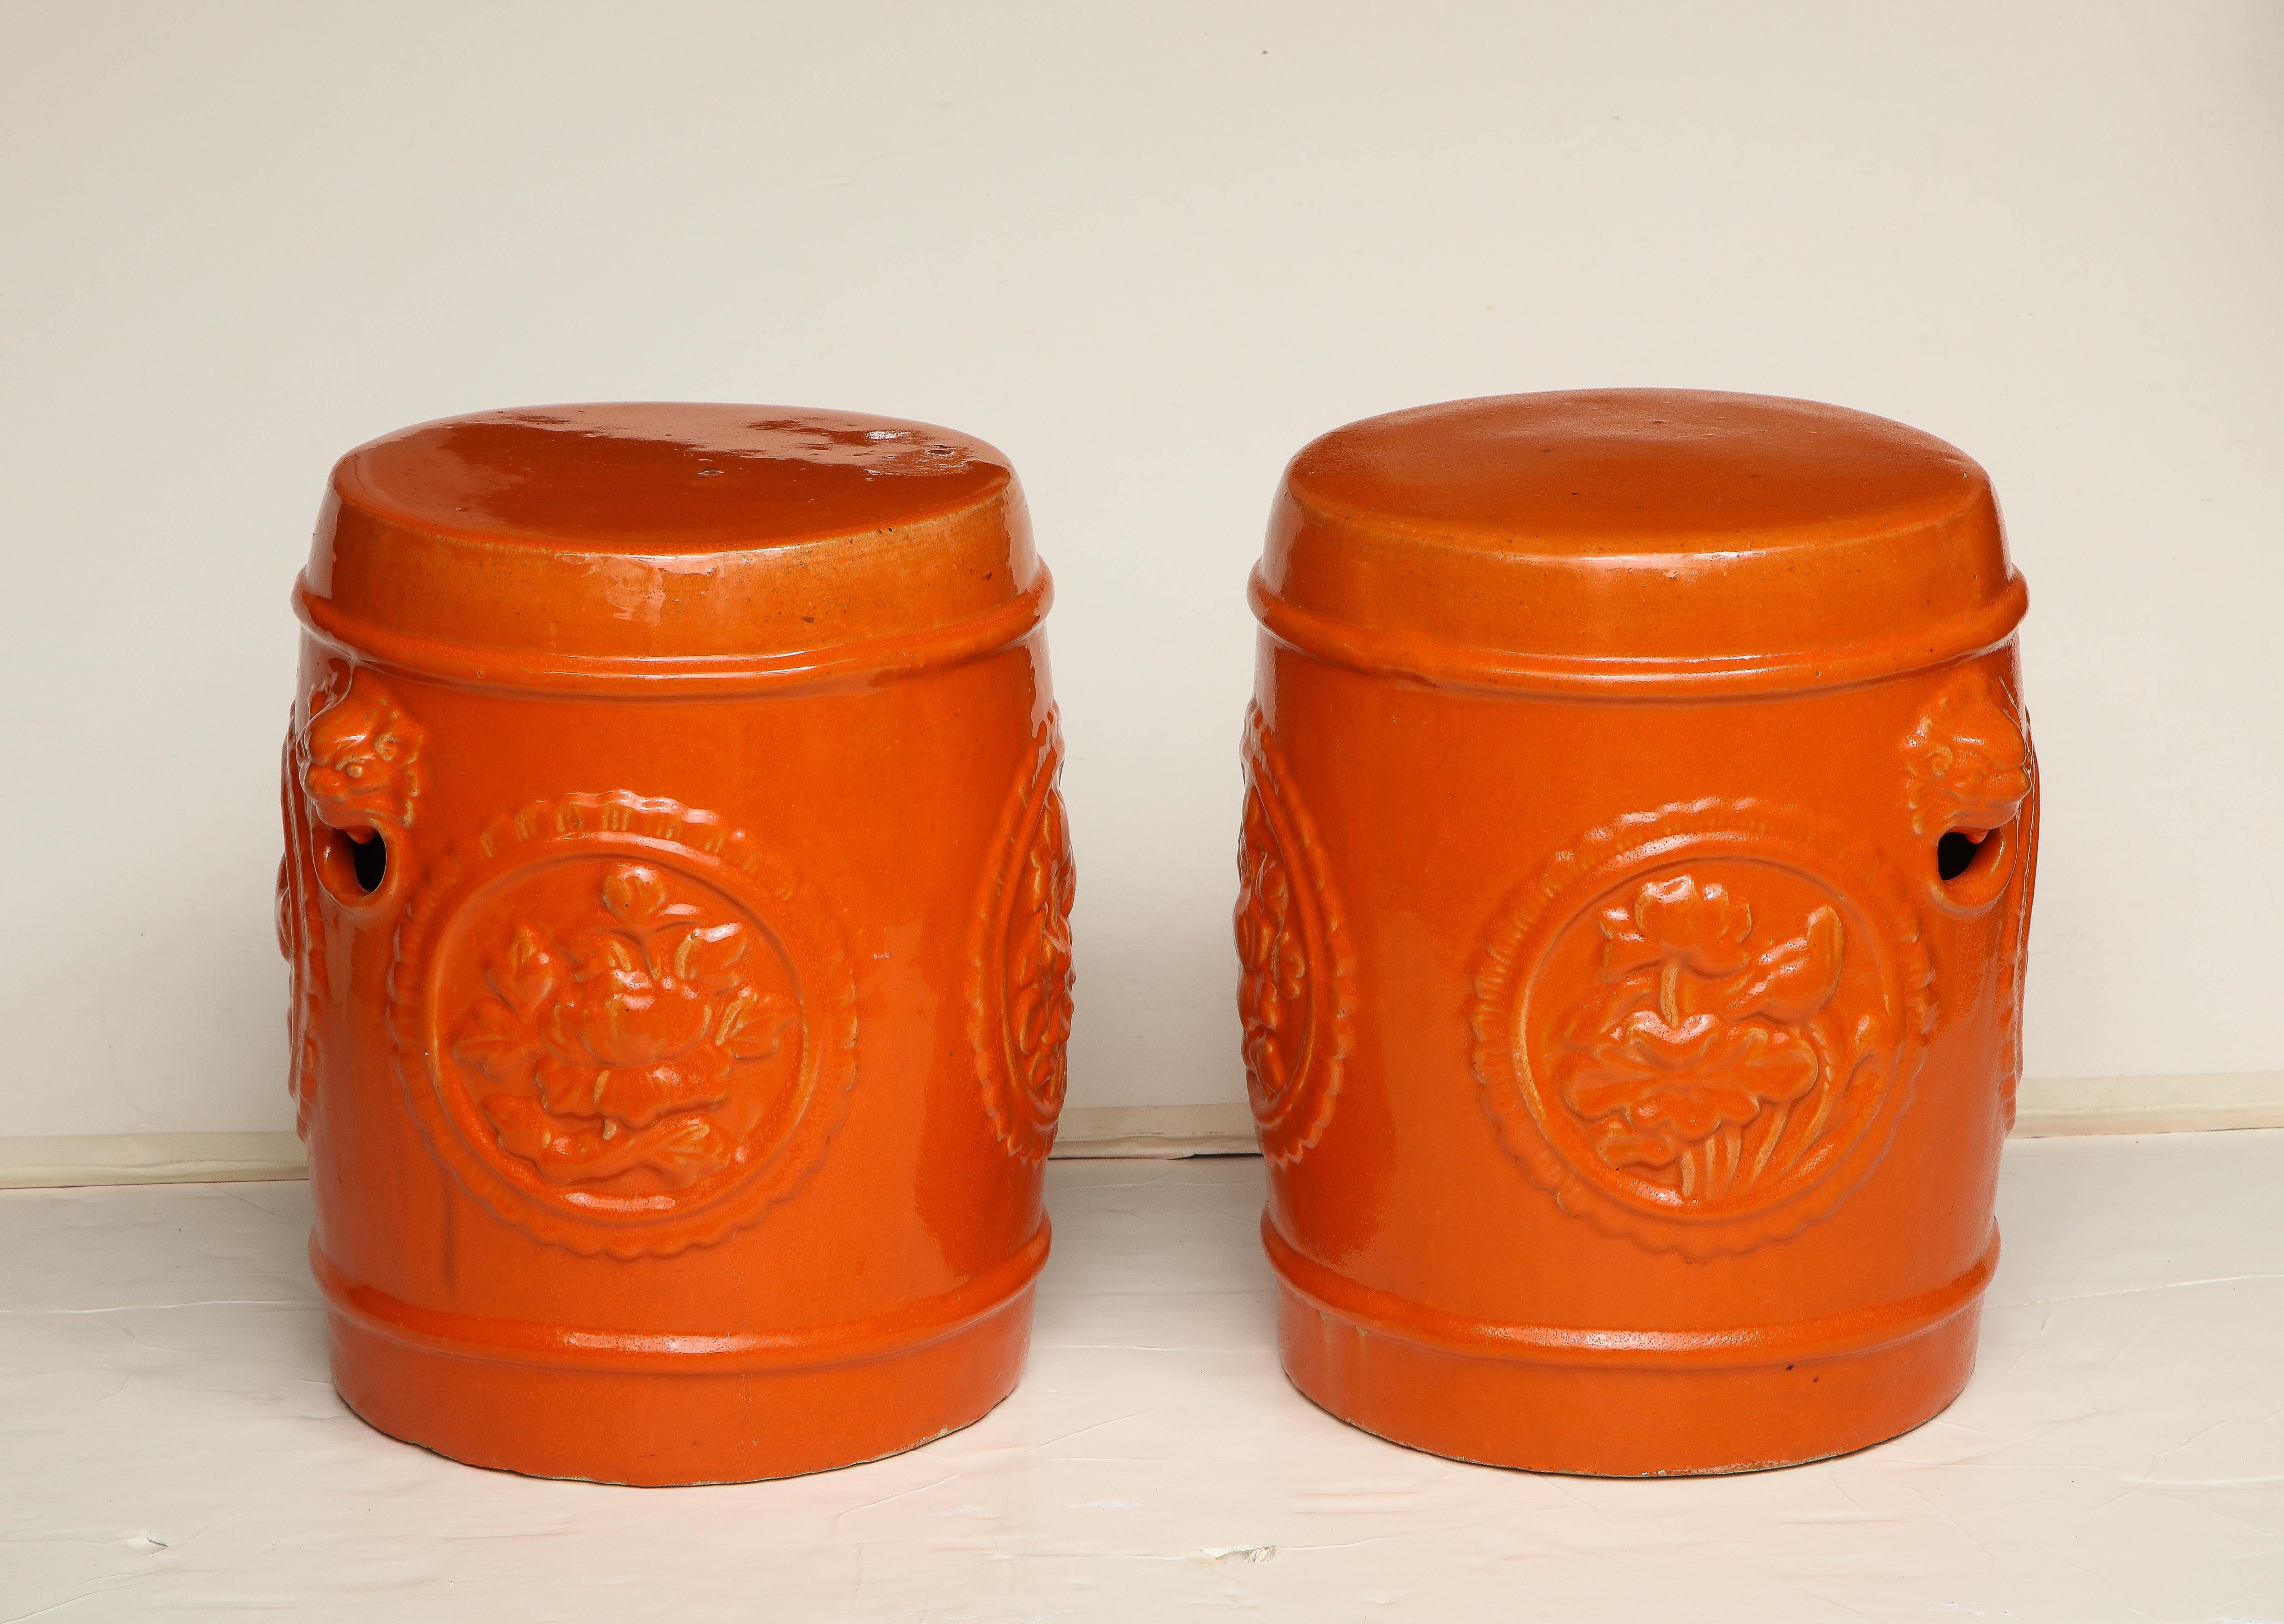 Orange kann in vielen Räumen einen wunderbaren Farbakzent setzen:: und diese beiden chinesischen Keramik-Gartenhocker sind sowohl farbenfroh als auch nützlich. Sie können als Getränketisch oder als kleine Ottomane dienen und verleihen dem Raum ein